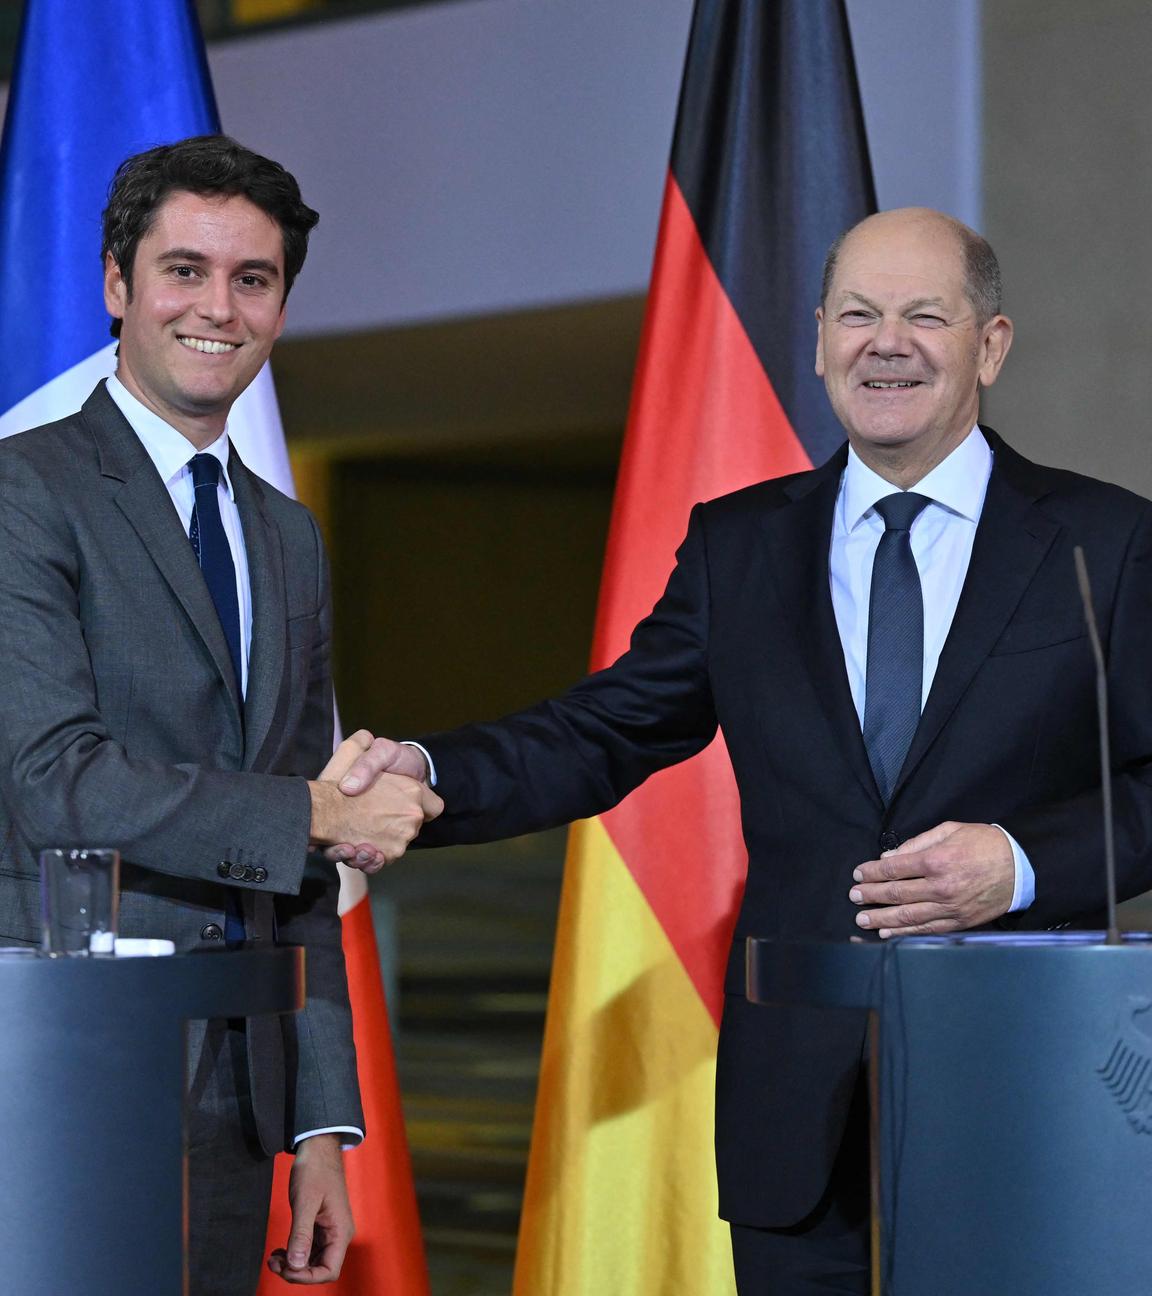 Bundeskanzler Olaf Scholz und Frankreichs Premierminister Gabriel Attal beim Treffen in Berlin. Sie stehen hinter zwei Redepulten und schütteln lächelnd die Hände.